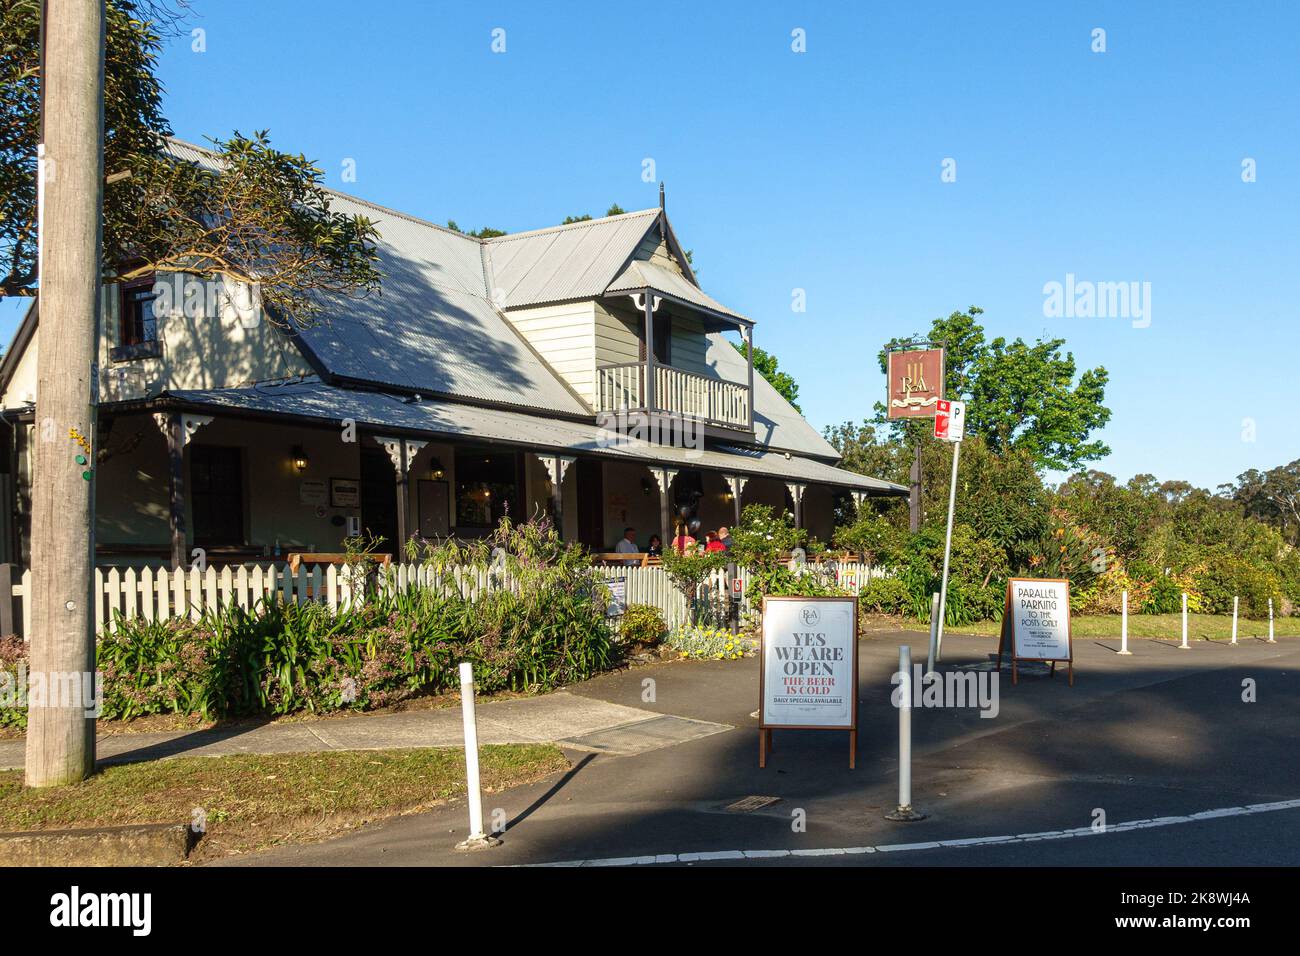 Le Royal Cricketers Arms Inn dans la banlieue ouest de Sydney de Prospect, Nouvelle-Galles du Sud Banque D'Images